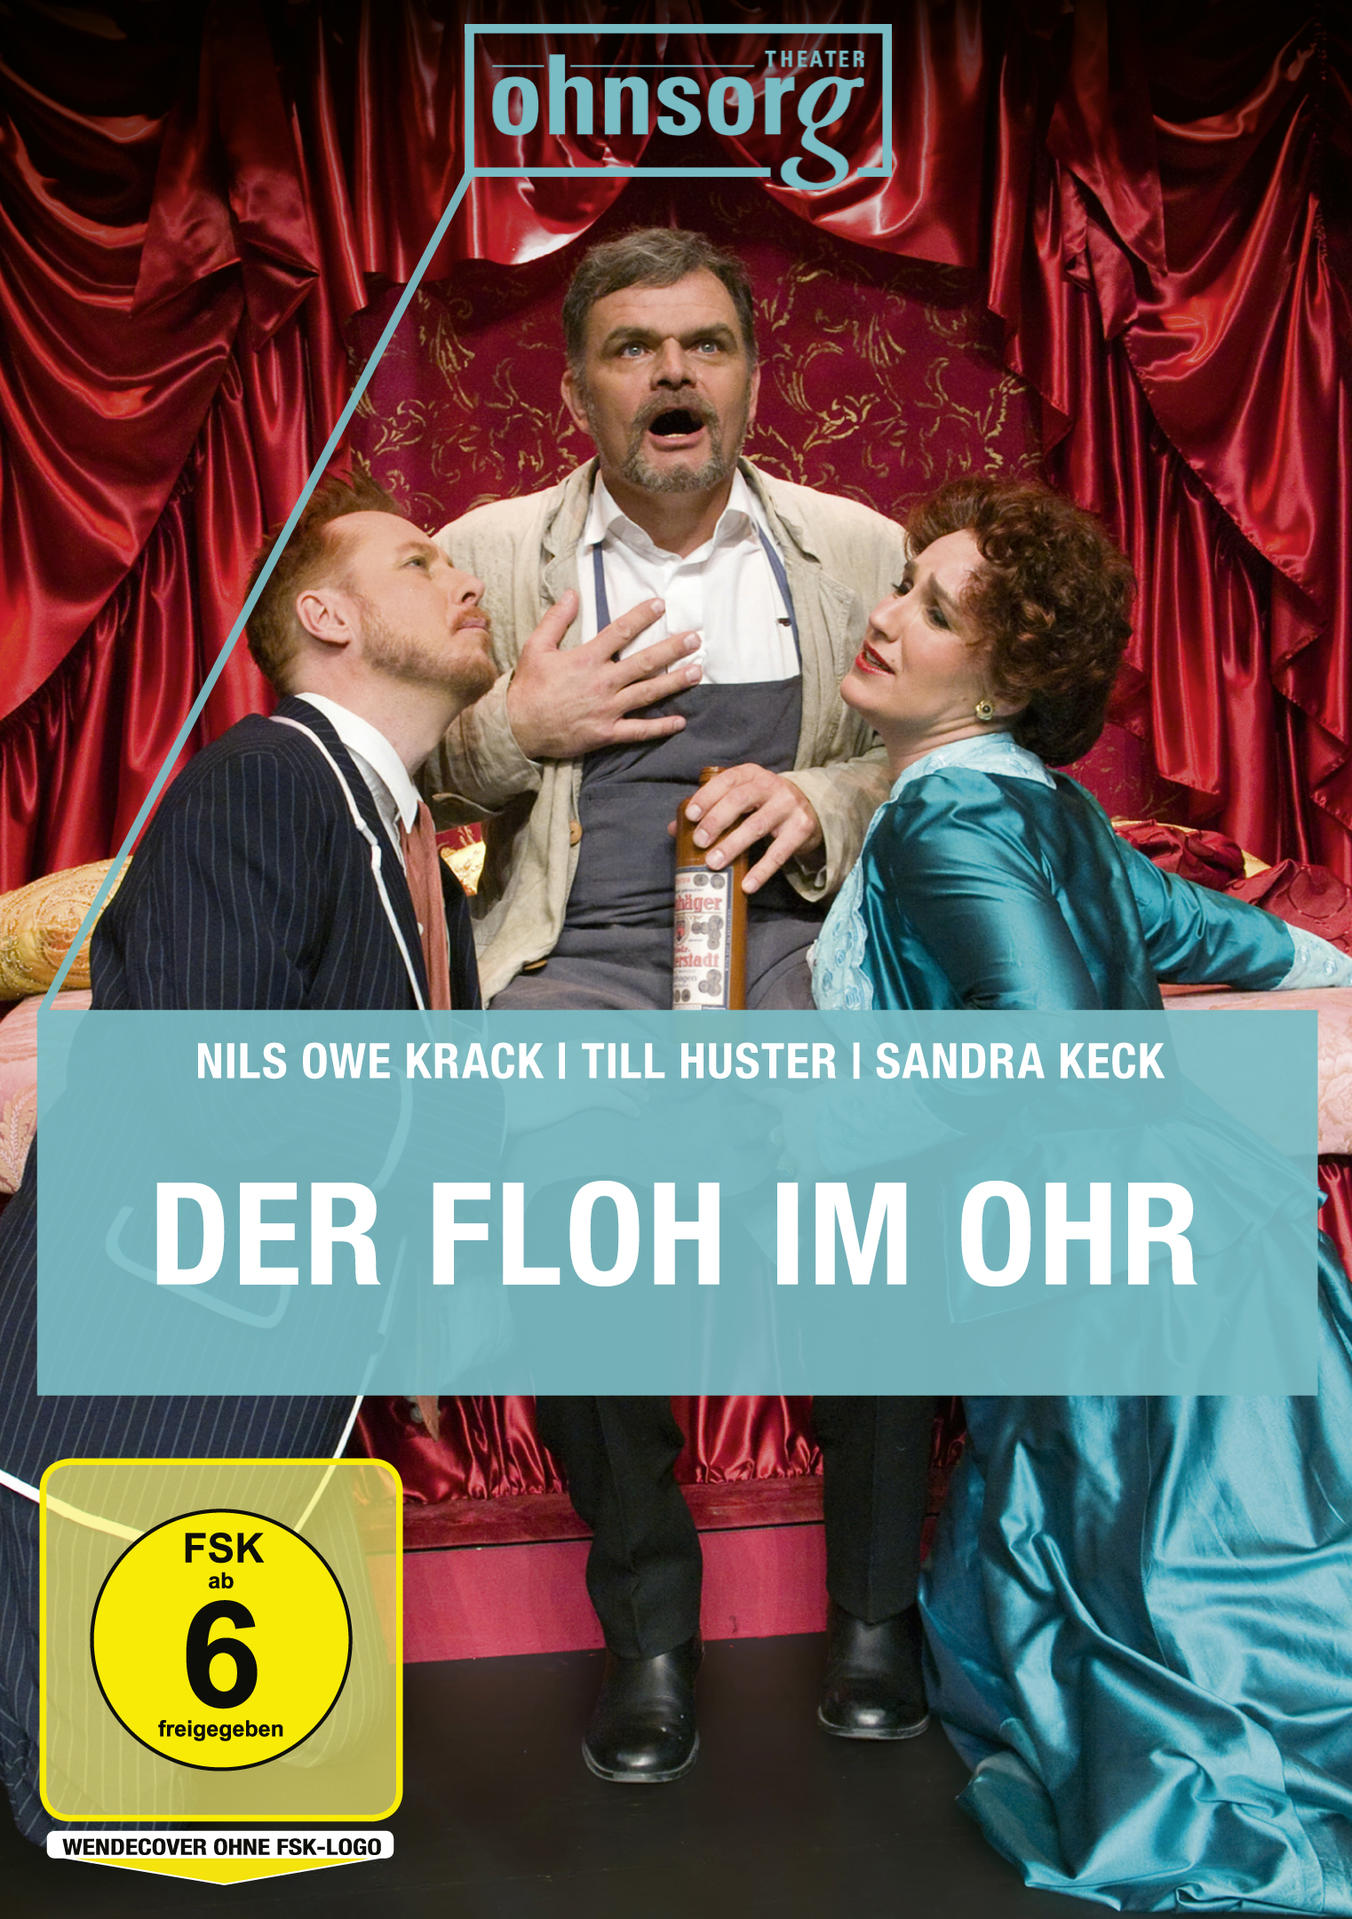 Der Ohnsorg-Theater DVD Floh Ohr im heute: